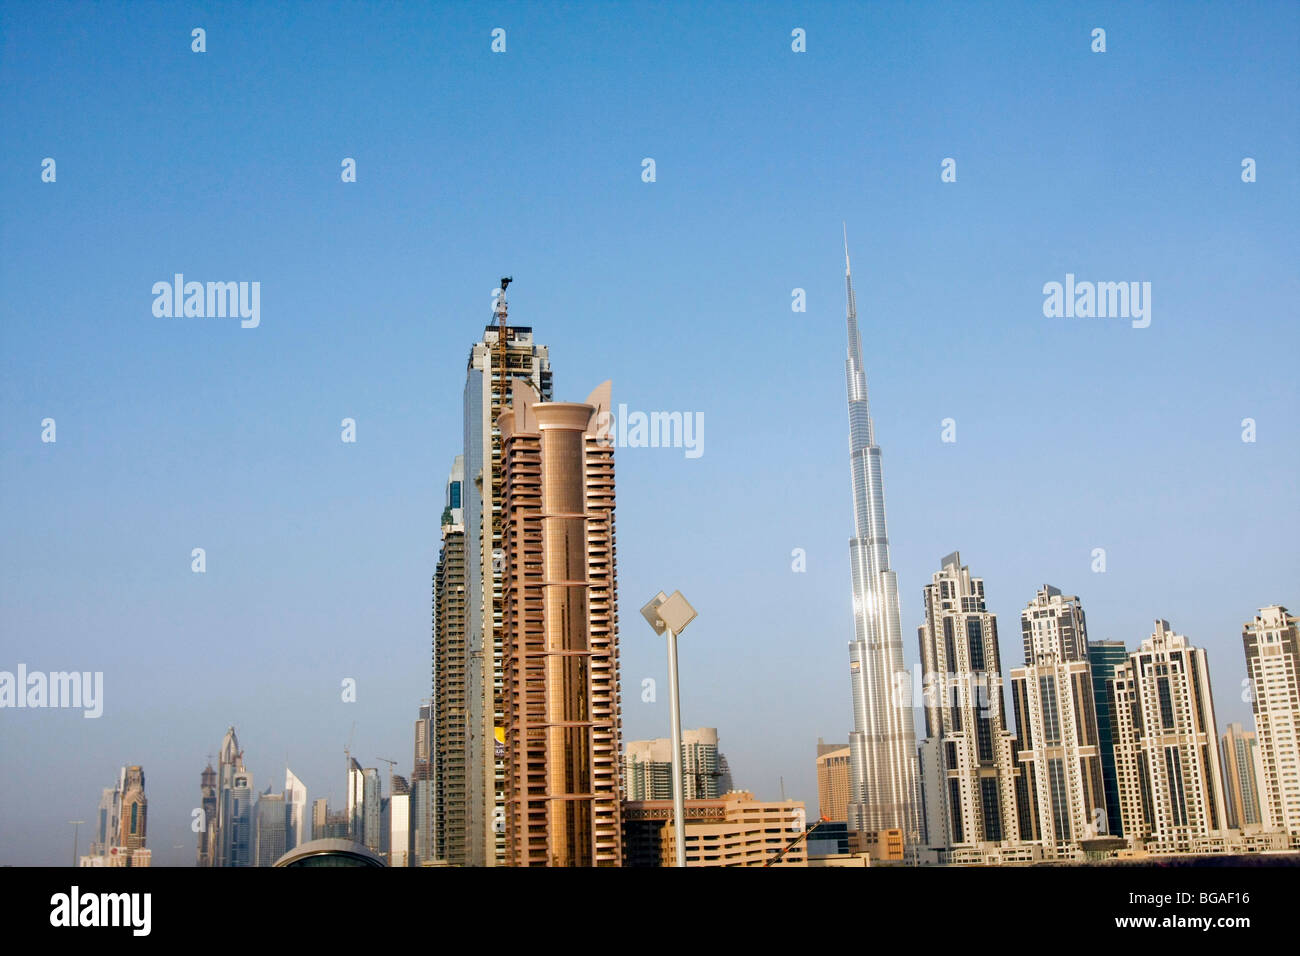 Hochhäuser im Financial Center in Dubai. Die hohe schmalere Gebäude ist der Burj Tower, höchstes Gebäude der Welt. Stockfoto